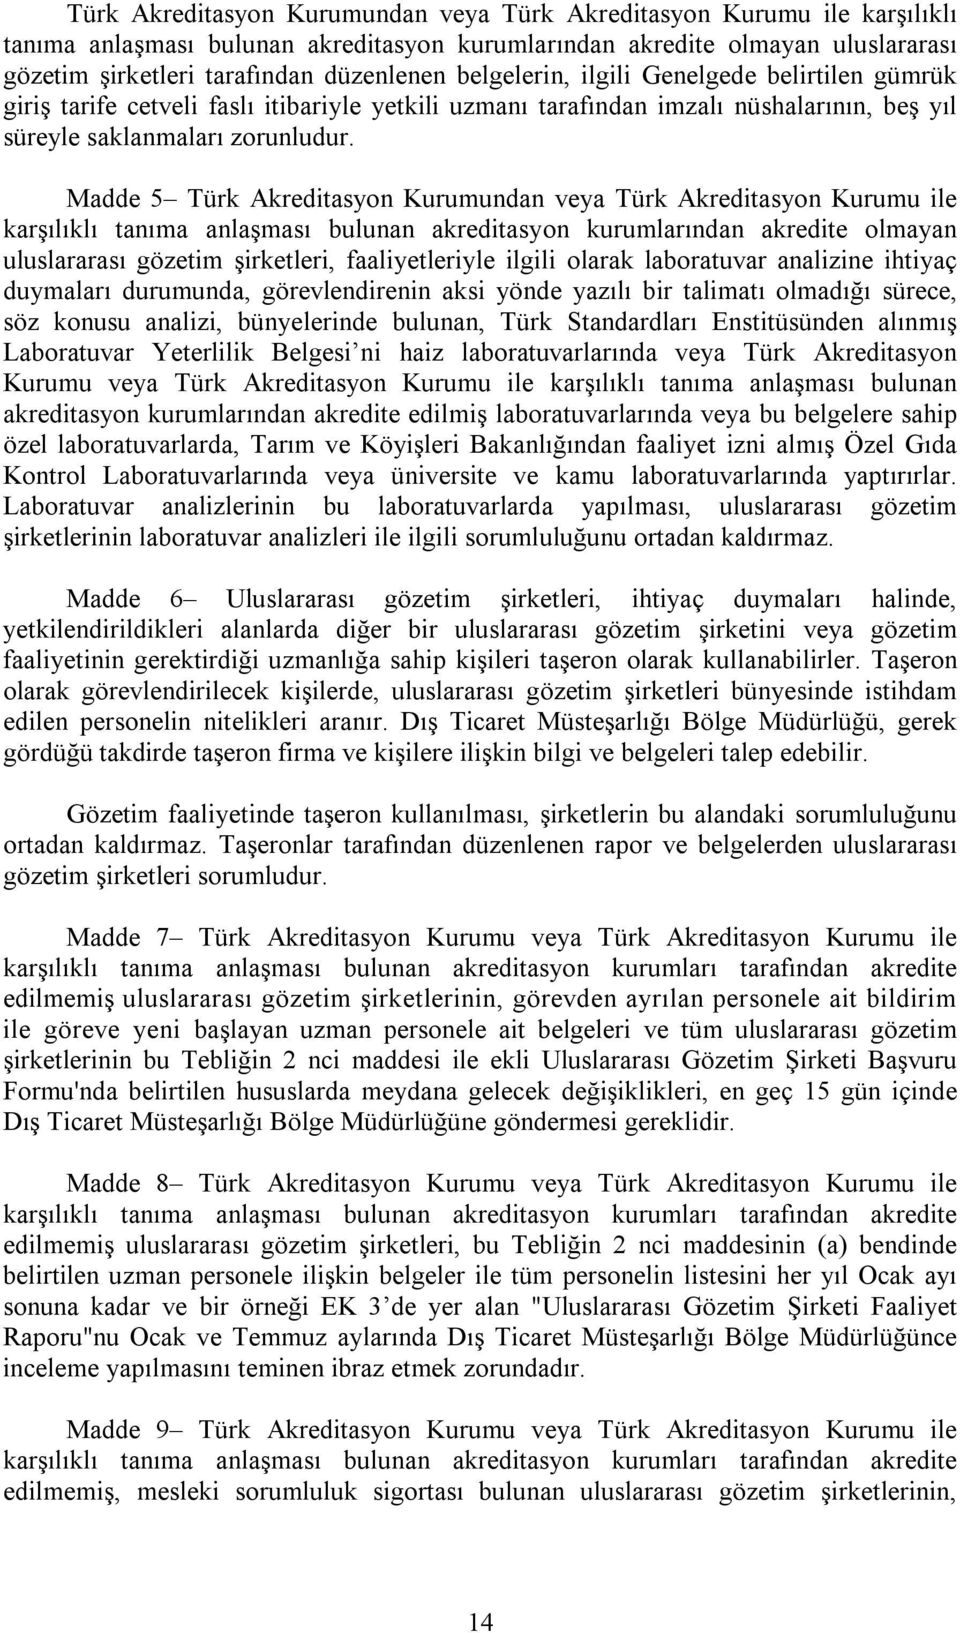 Madde 5 Türk Akreditasyon Kurumundan veya Türk Akreditasyon Kurumu ile karşılıklı tanıma anlaşması bulunan akreditasyon kurumlarından akredite olmayan uluslararası gözetim şirketleri, faaliyetleriyle